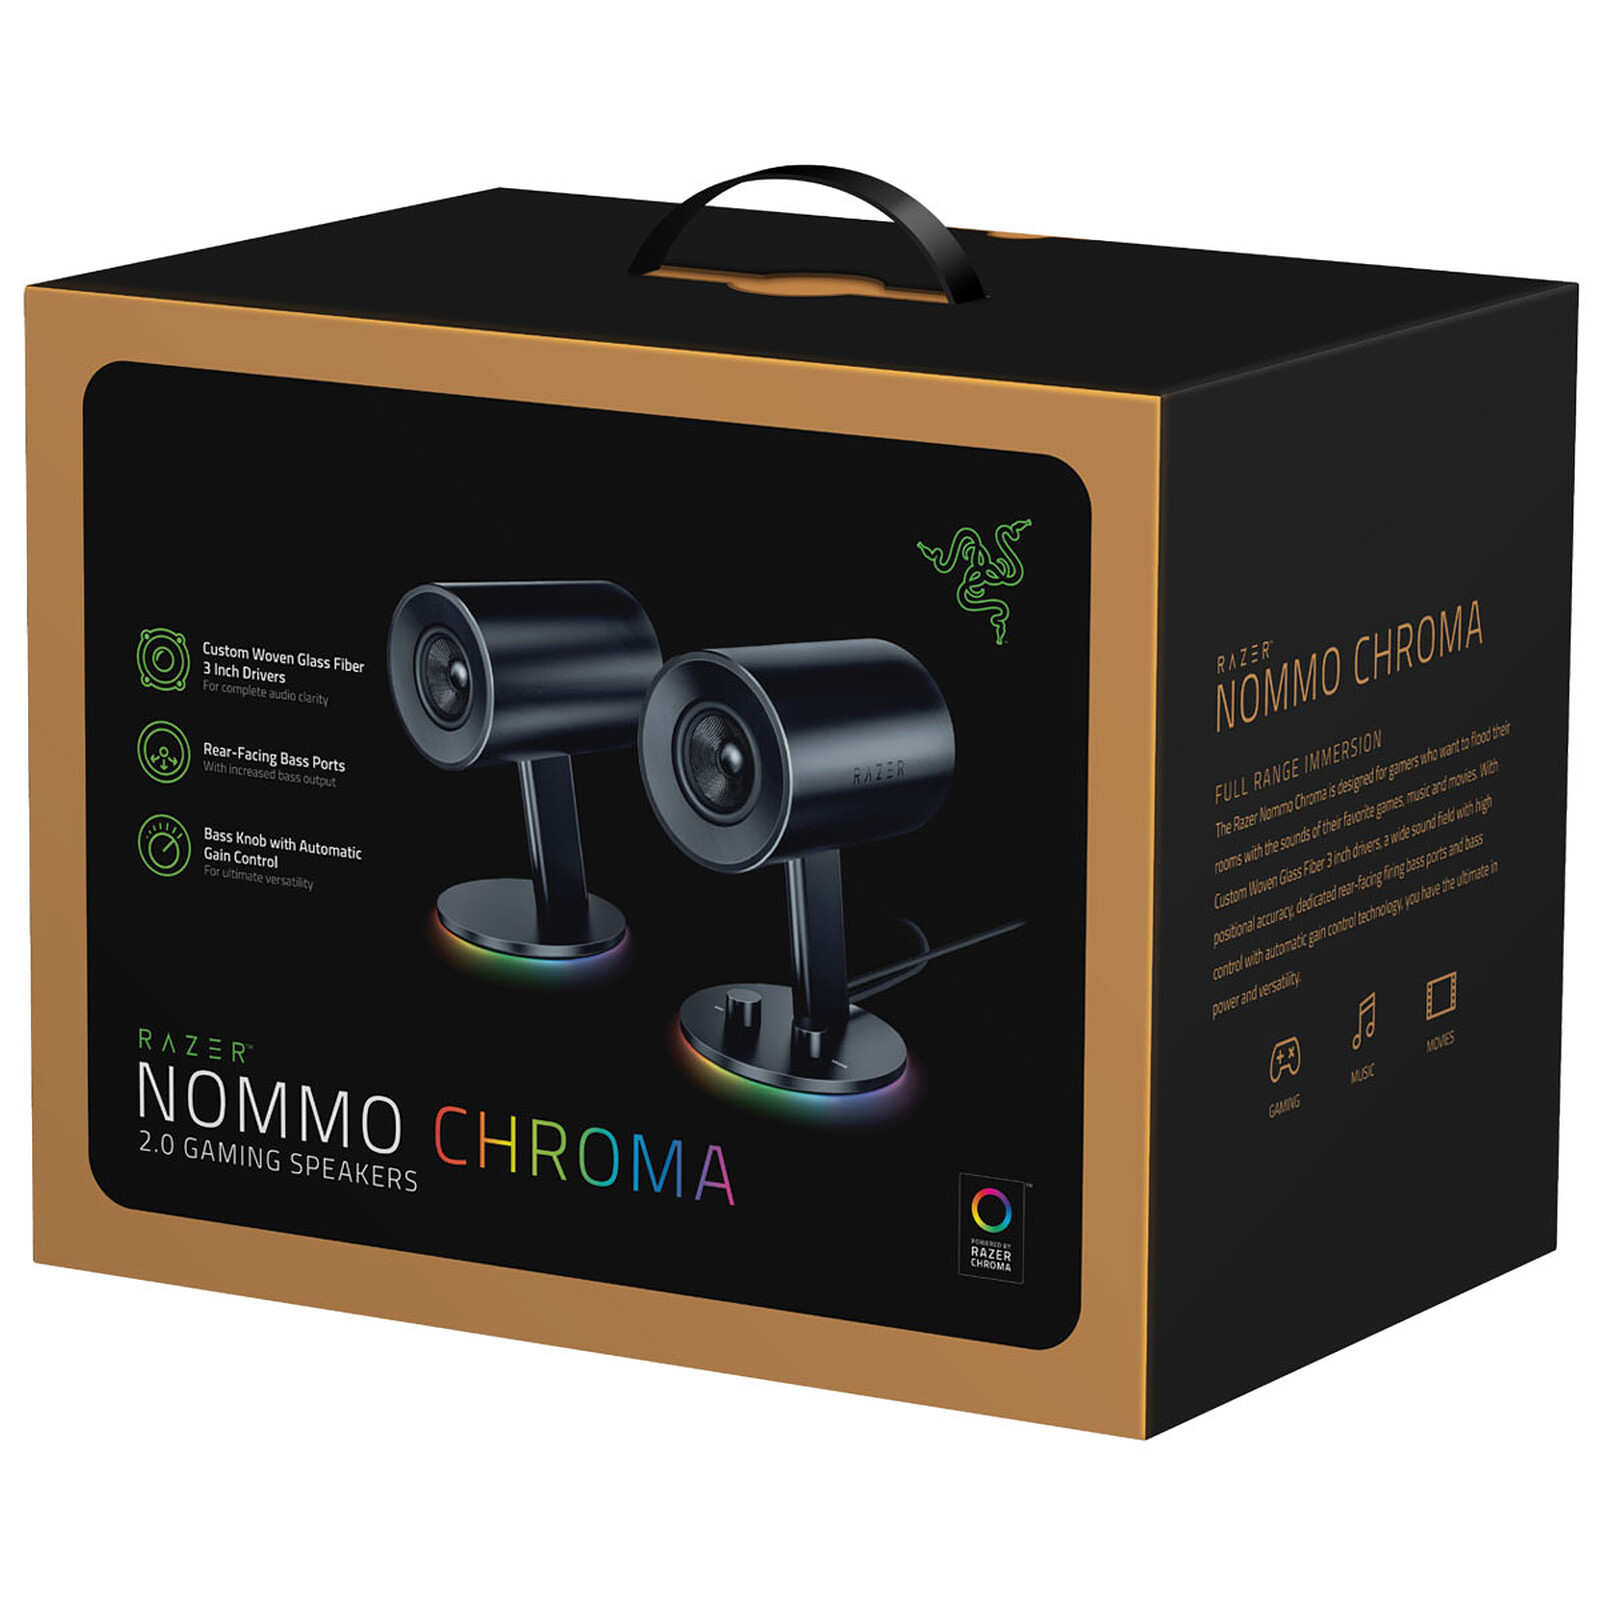 Razer NOMMO CHROMA - 4